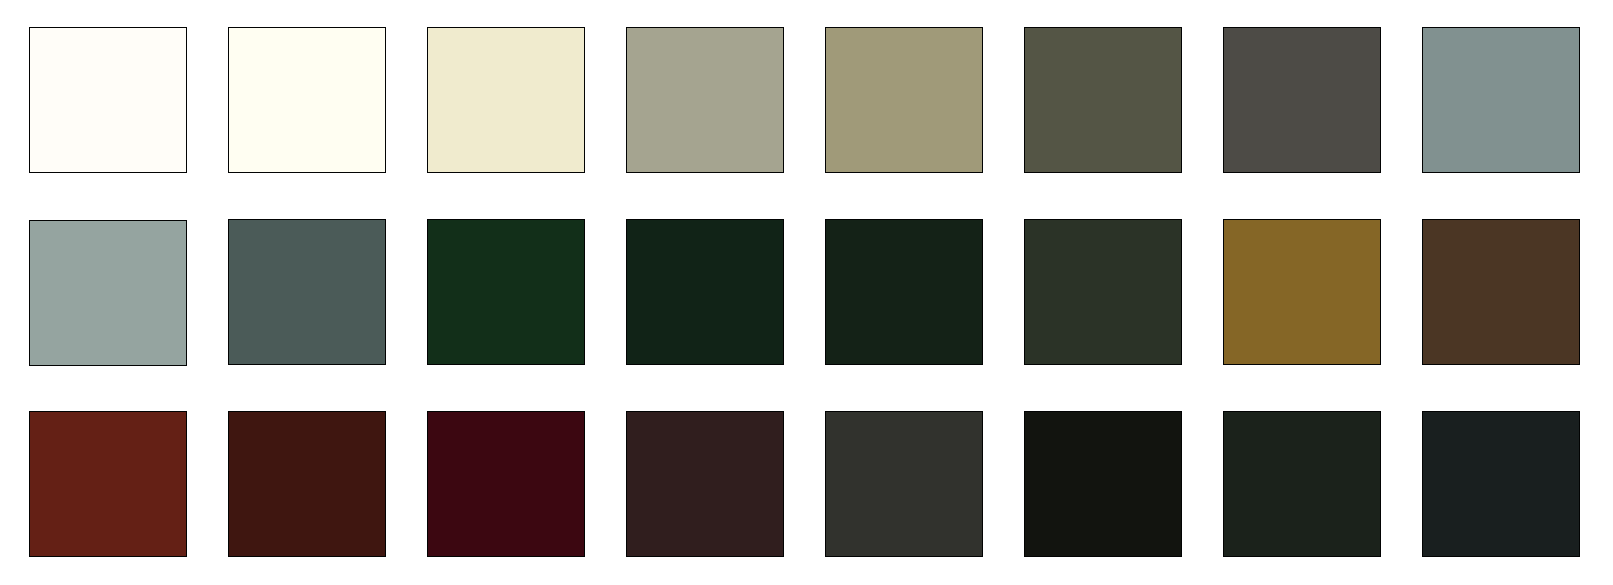 screen door colors